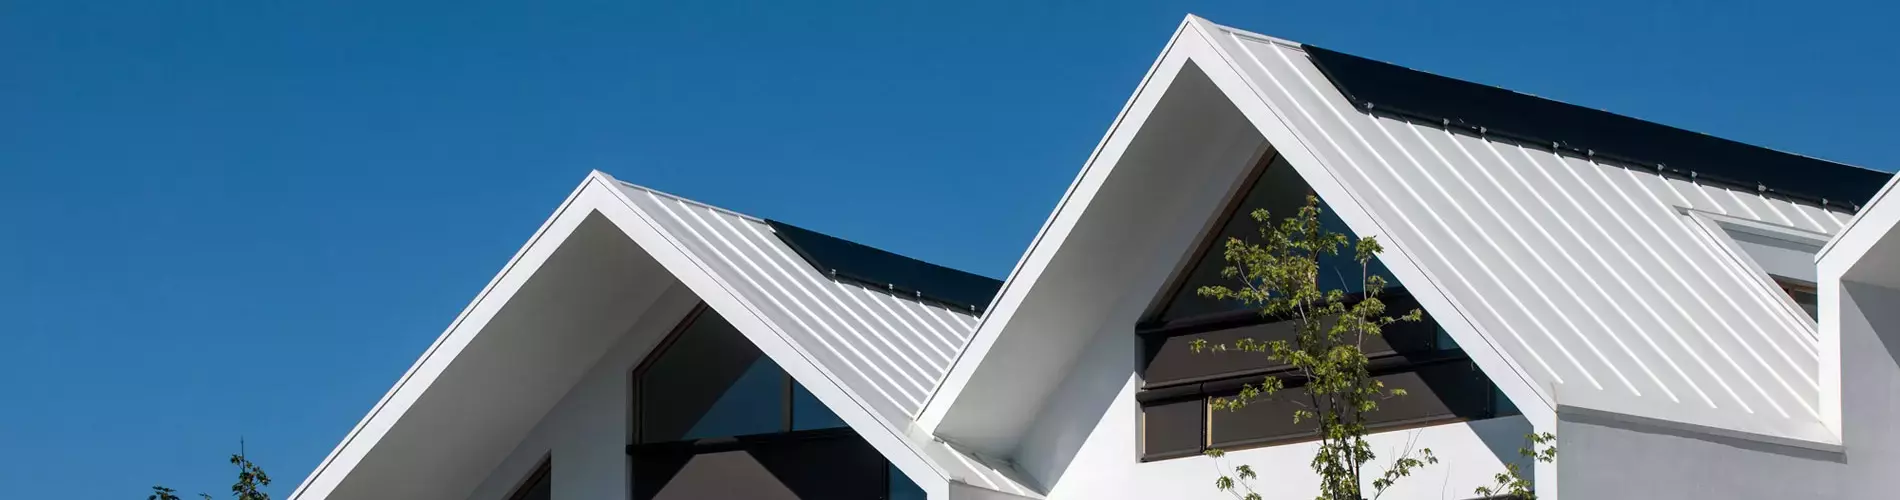 Aluminium roof